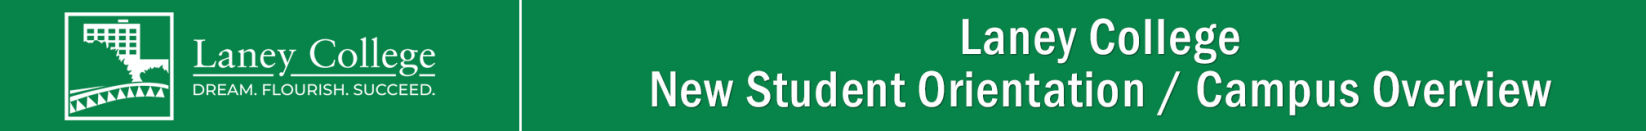 Laney College, New Student Orientation header graphic.